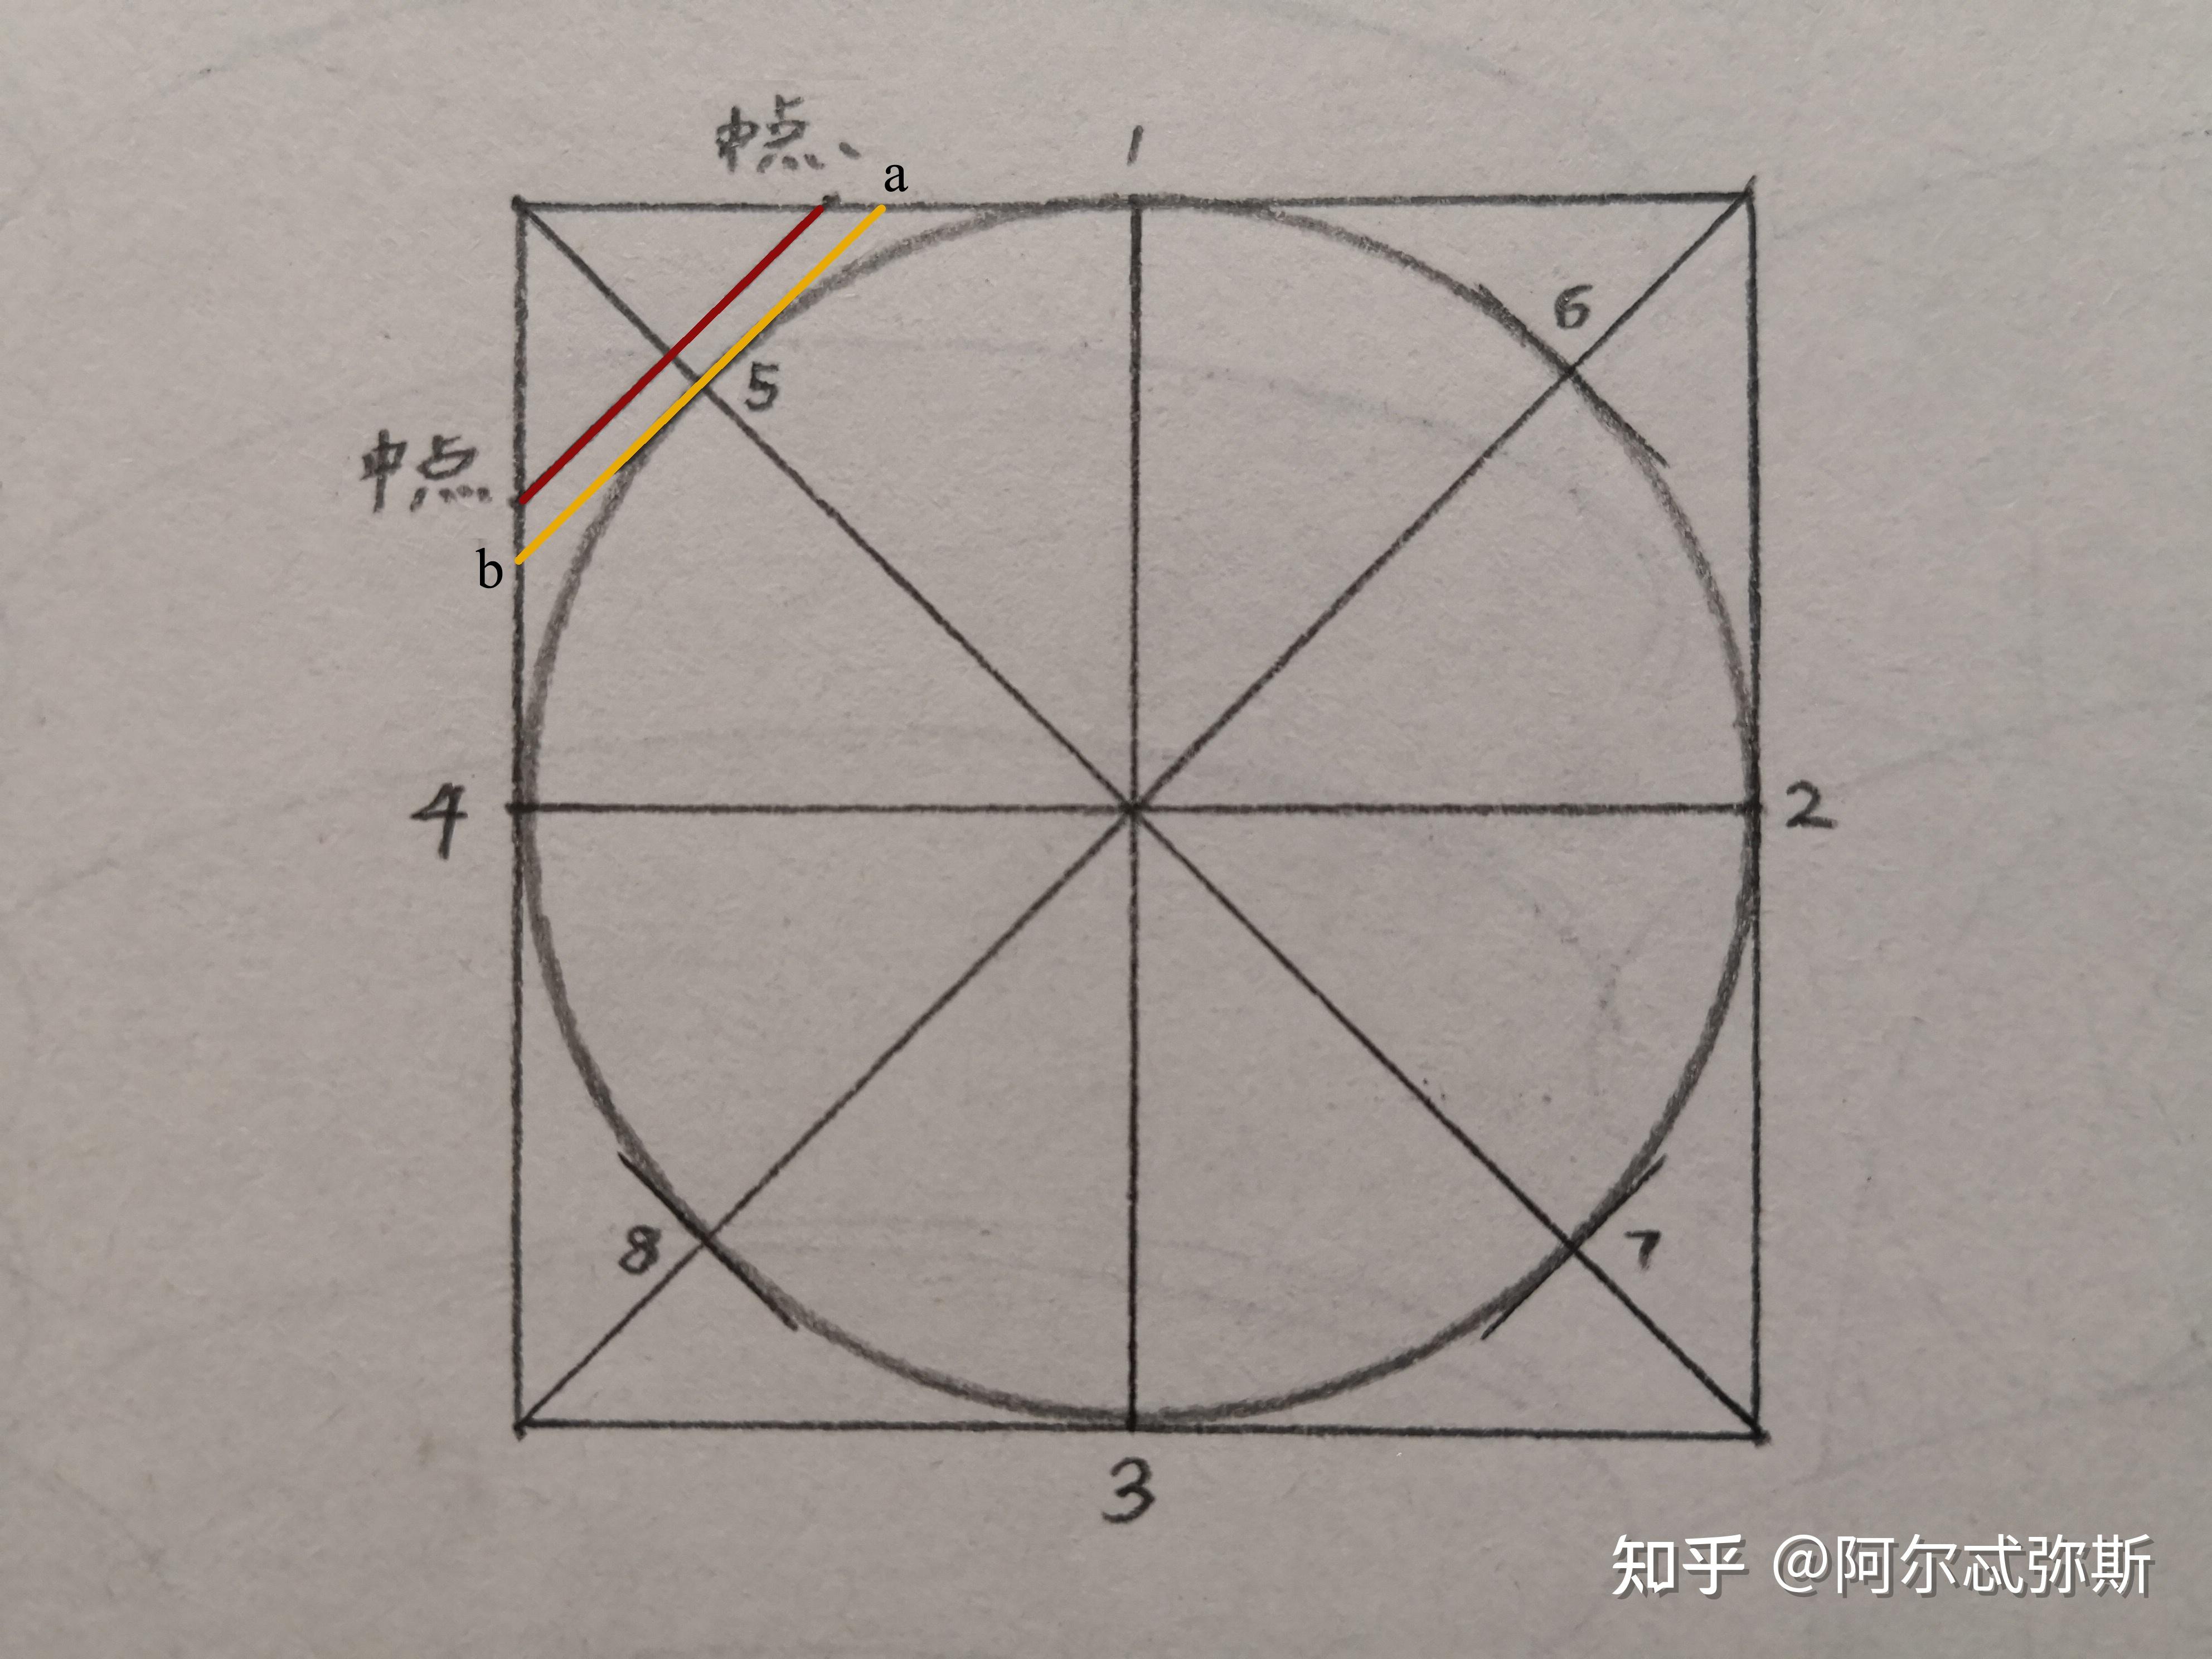 用素描里的切圆法无限切割下去形成的图形是椭圆吗